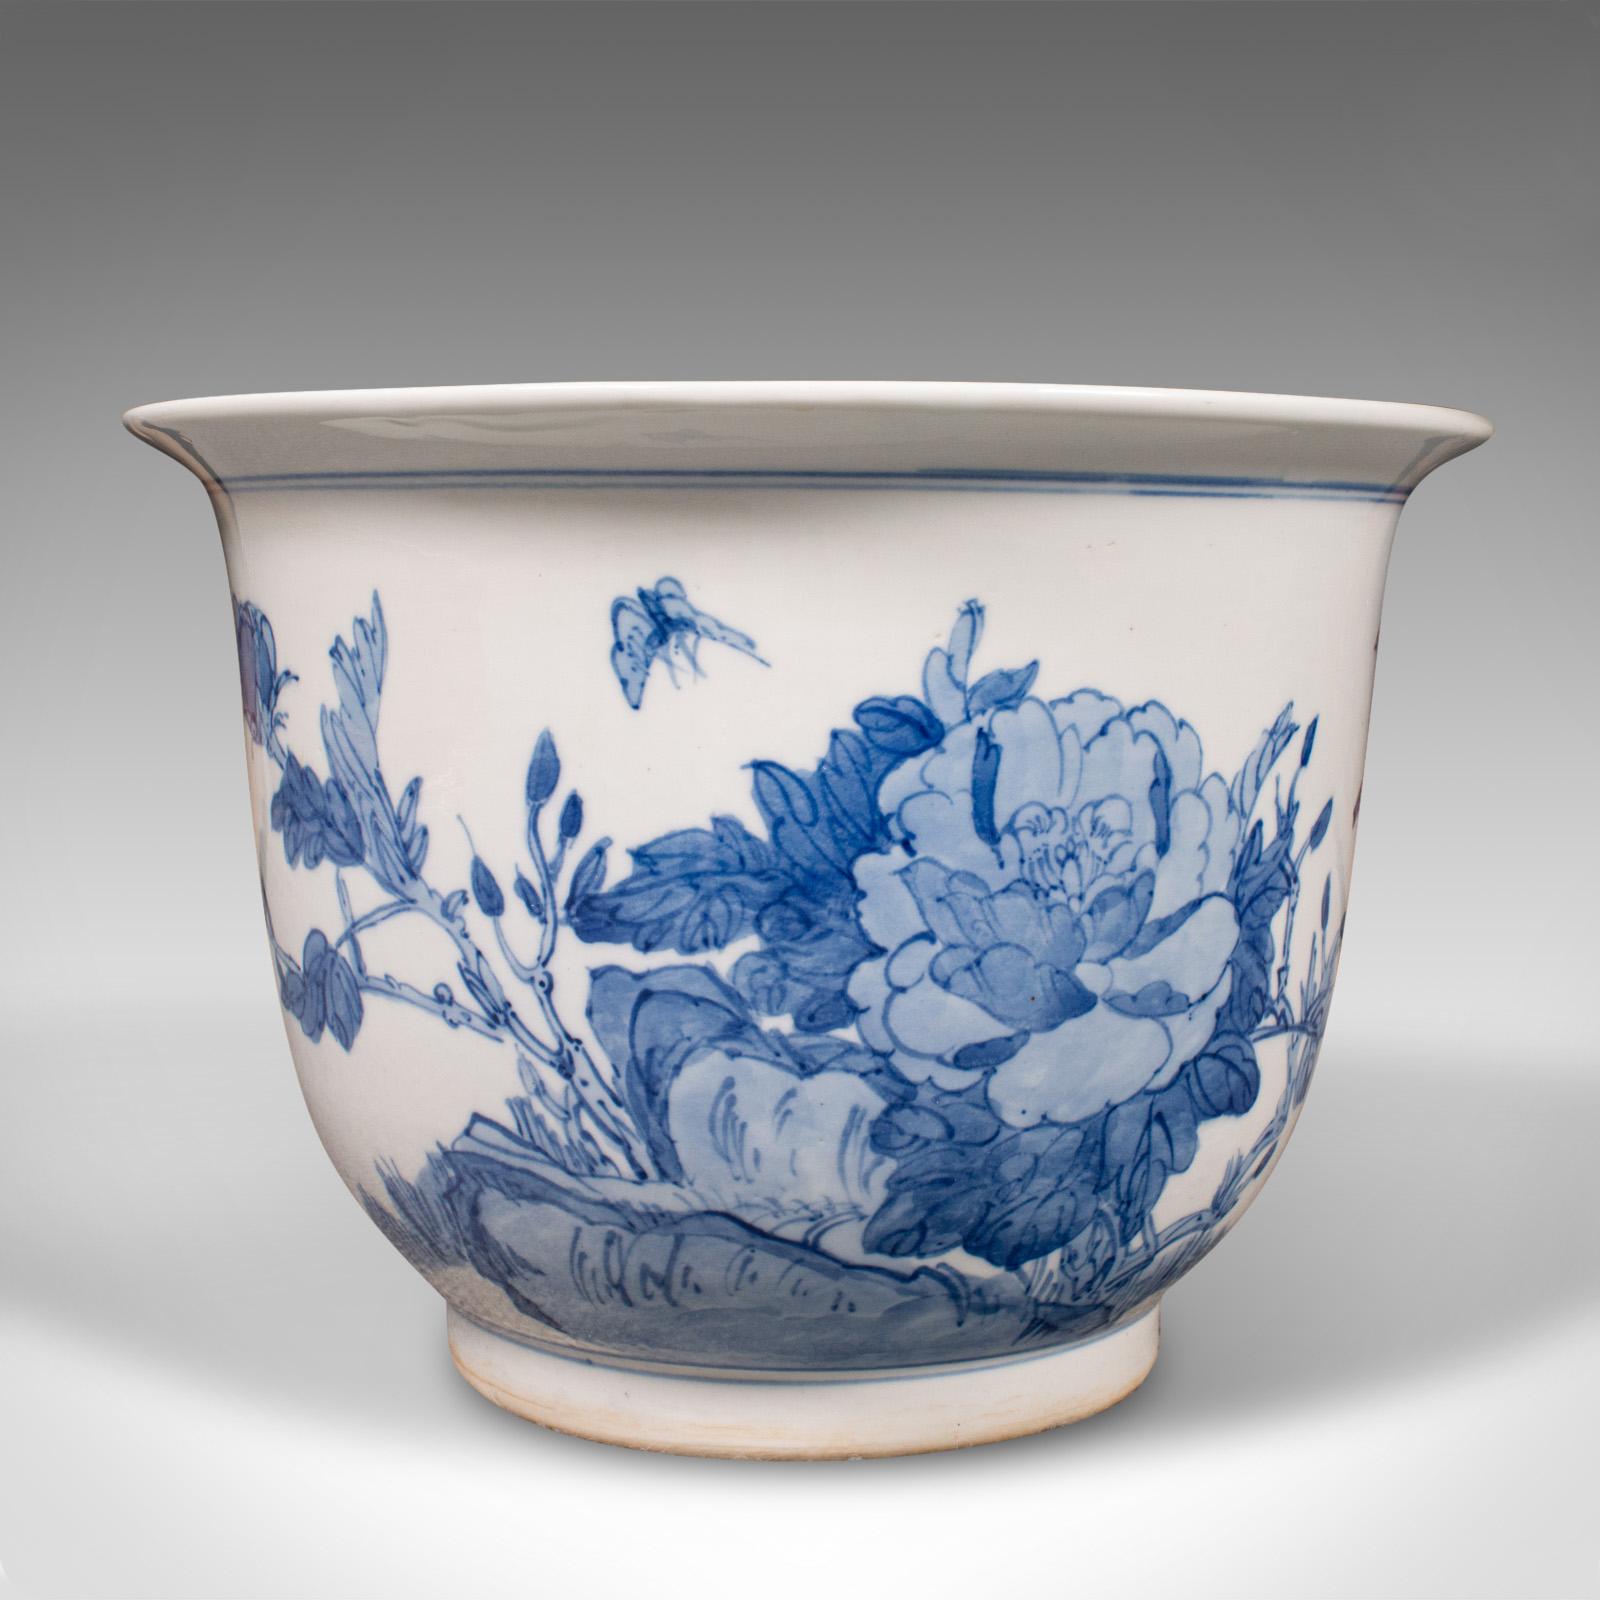 Dies ist ein dekoratives Pflanzgefäß im Vintage-Stil. Eine chinesische, blau-weiße Jardiniere aus Keramik, Mitte des 20. Jahrhunderts, um 1960.

Charmantes Pflanzgefäß mit ansprechendem Dekor
Mit einer wünschenswerten gealterten Patina